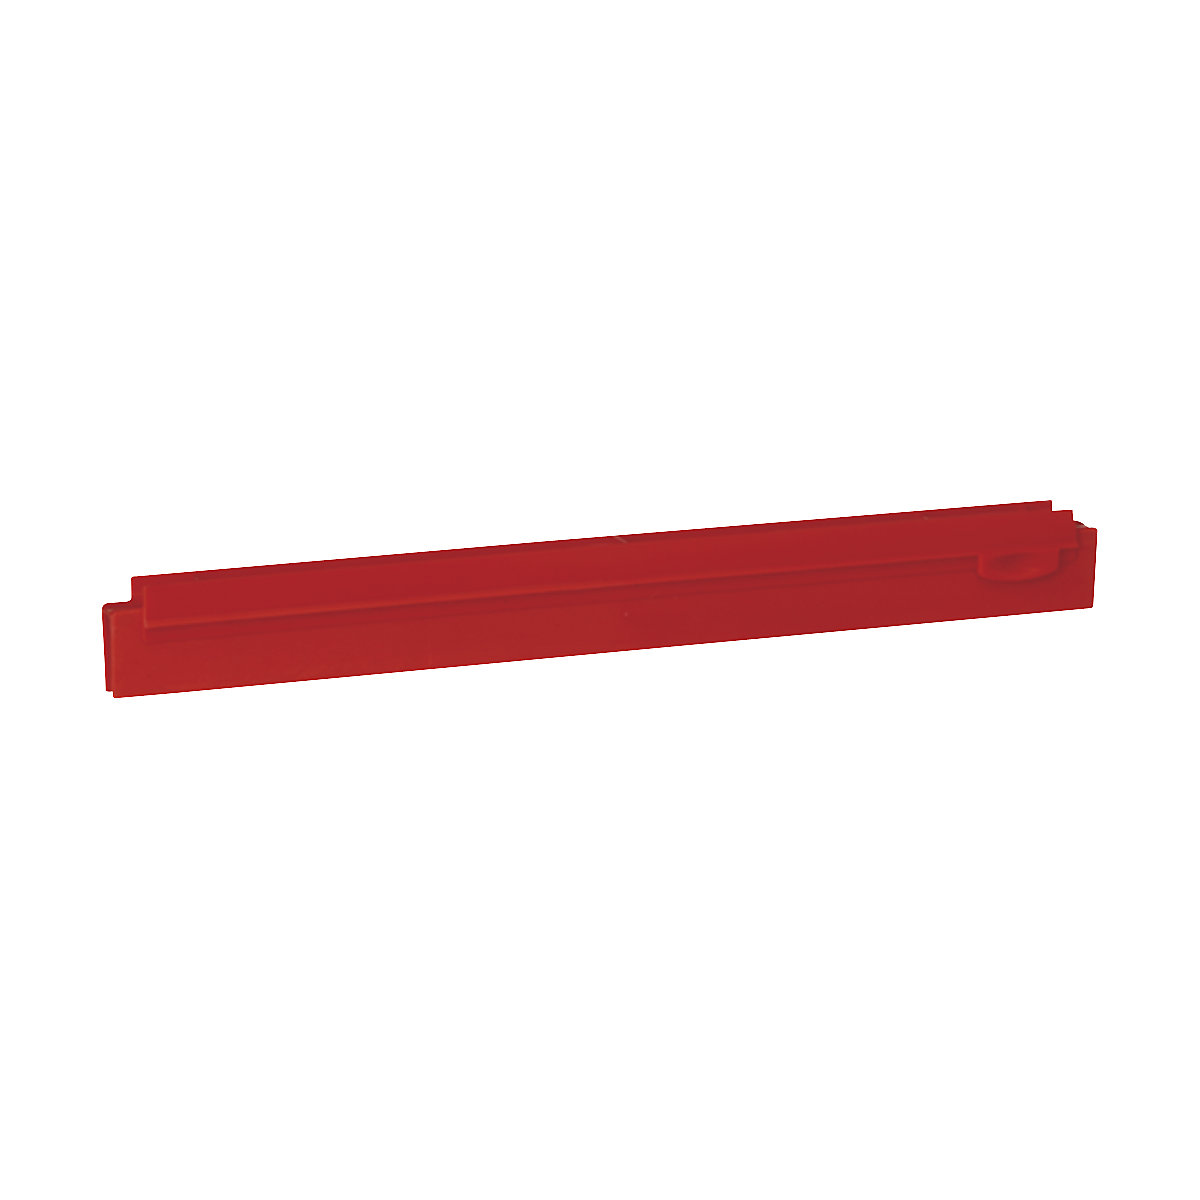 Zamjenska kaseta, higijenska – Vikan, dužina 400 mm, pak. 10 kom., u crvenoj boji